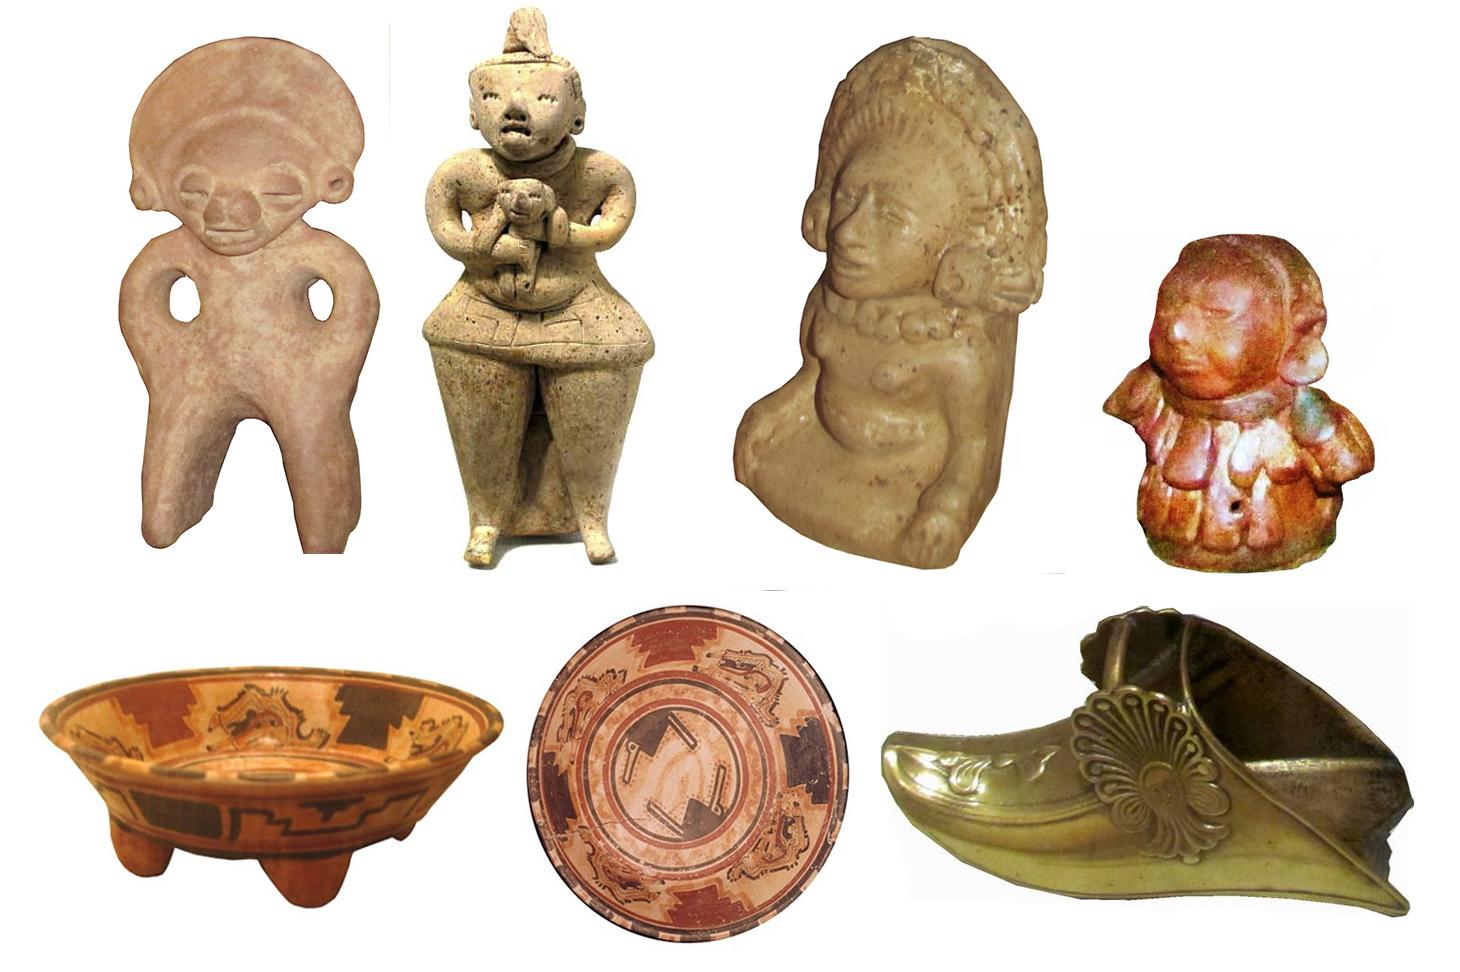 Las figurillas antropomorfas, pito flauta, cuenco de cerámica y estribo de bronce fueron las primeras piezas que los trabajadores del museo detectaron que se habían extraviado. Imágenes cortesía de la Secultura.